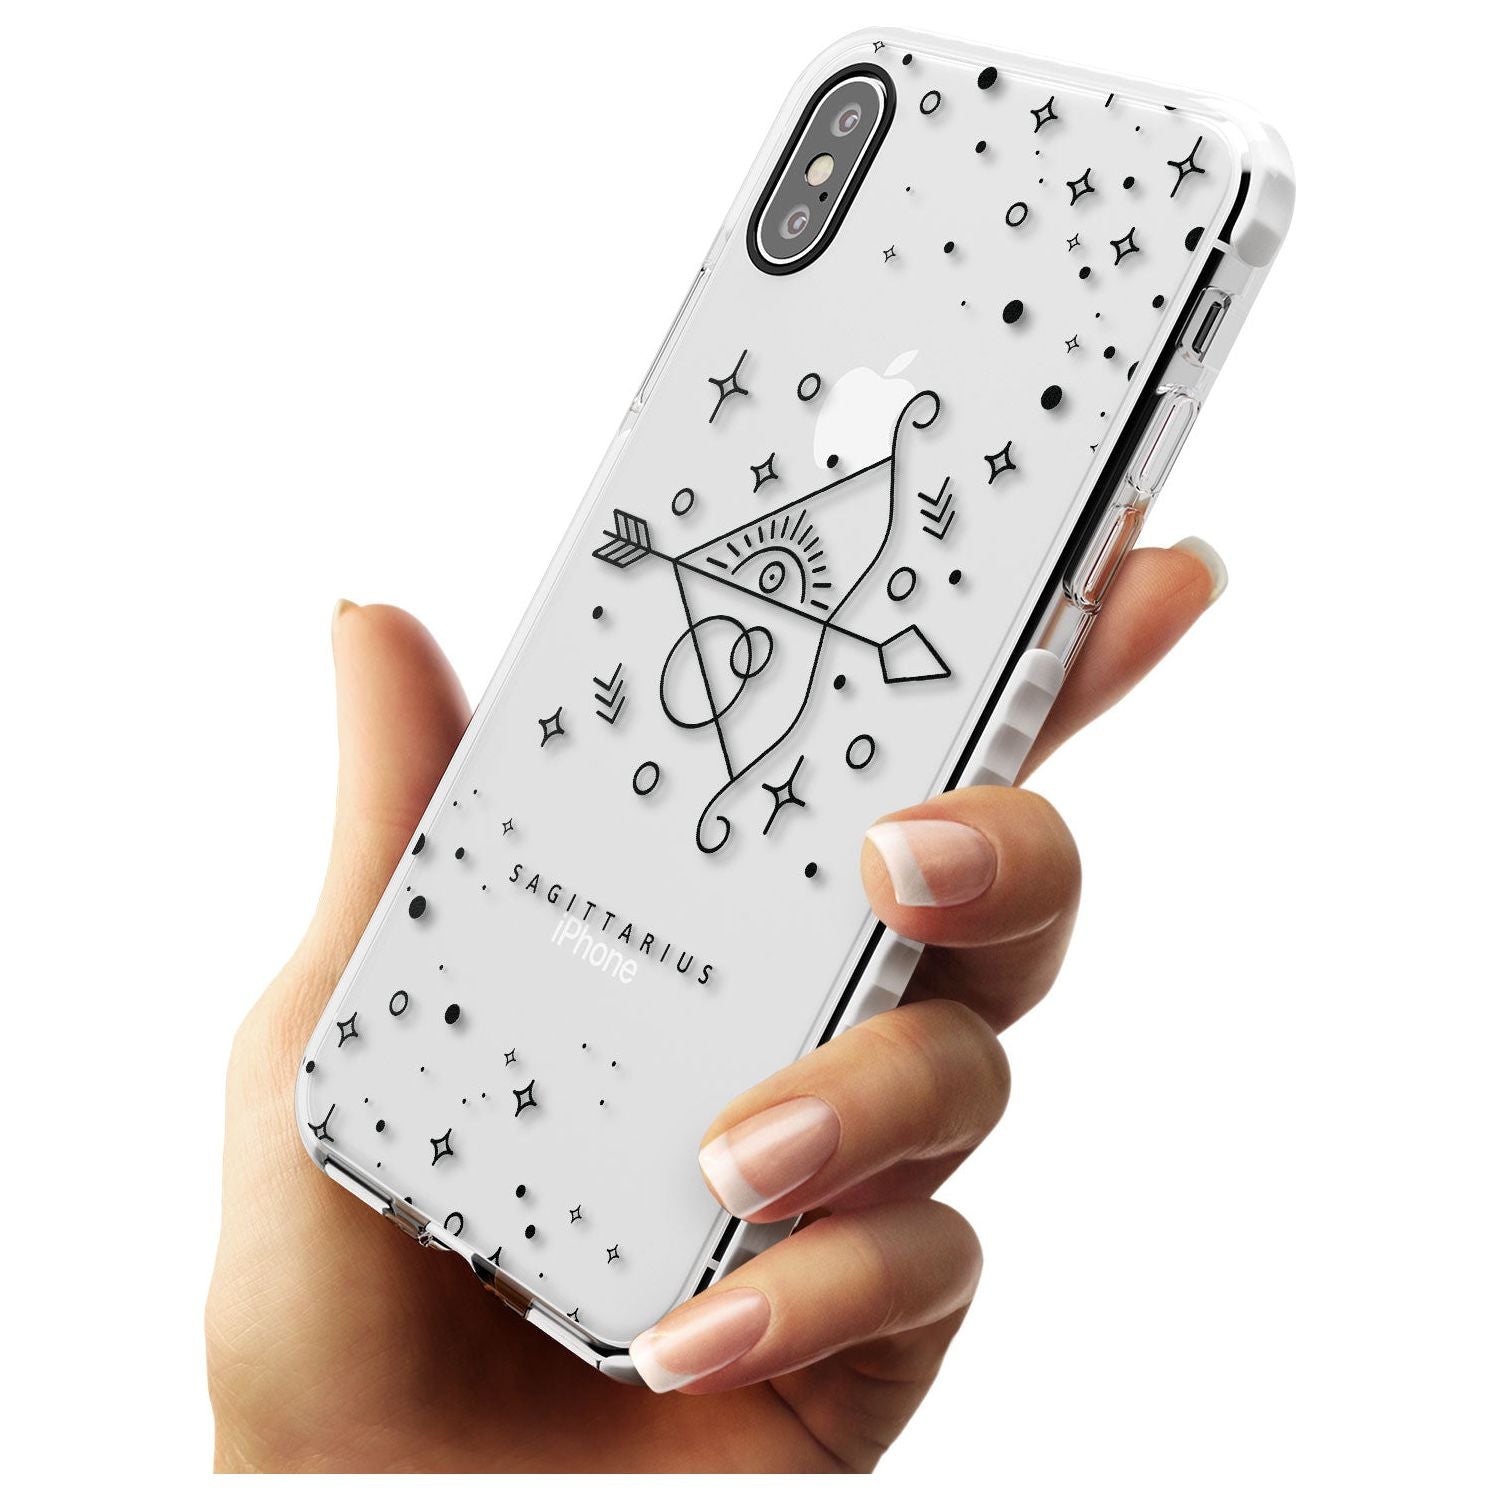 Sagittarius Emblem - Transparent Design Impact Phone Case for iPhone X XS Max XR